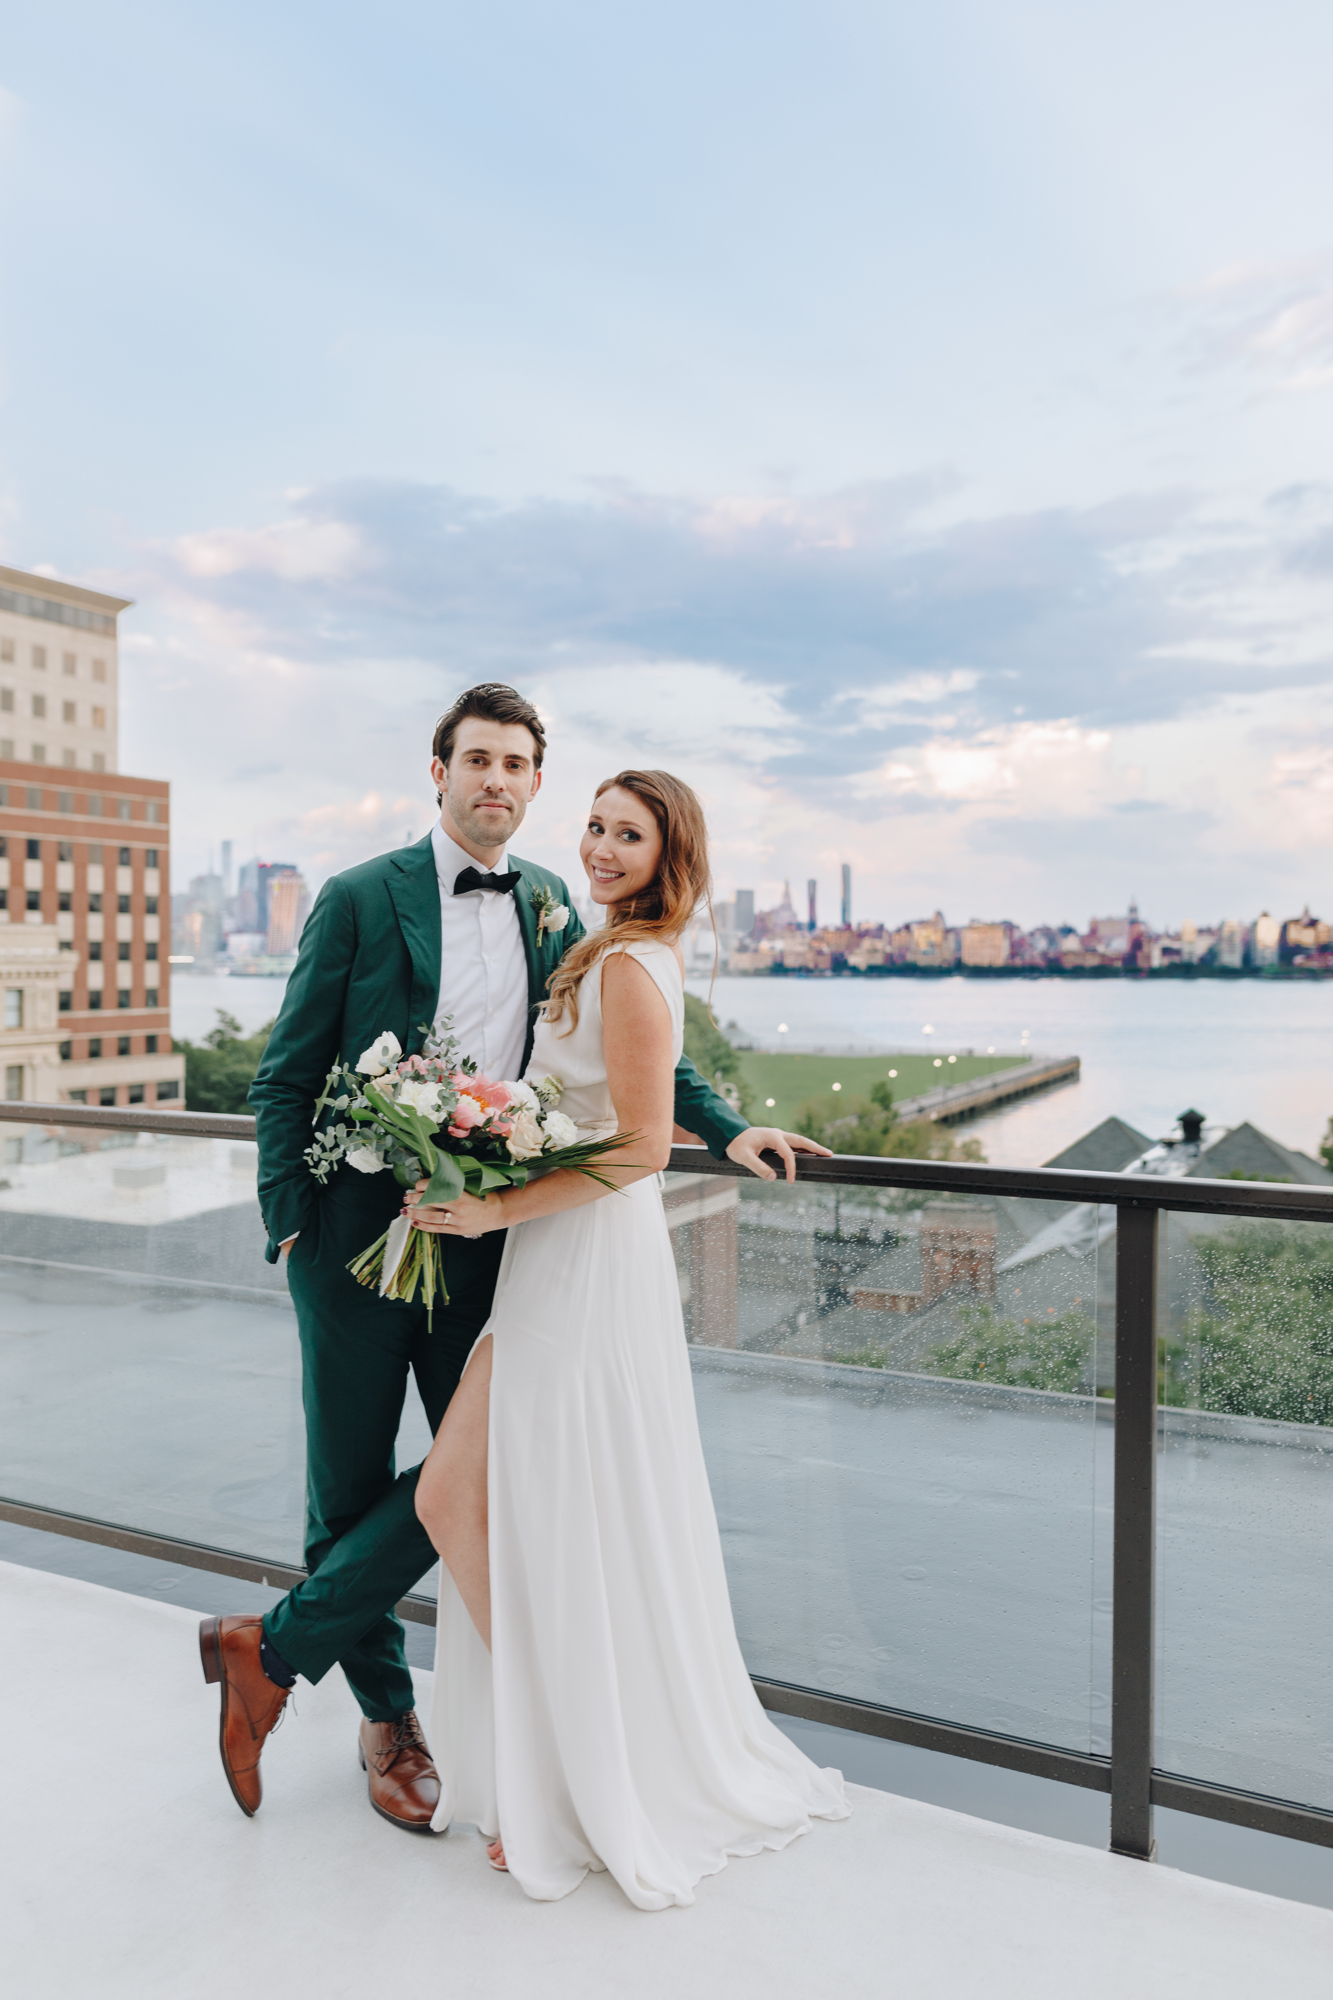 Antique Loft wedding reception photos with Manhattan skyline